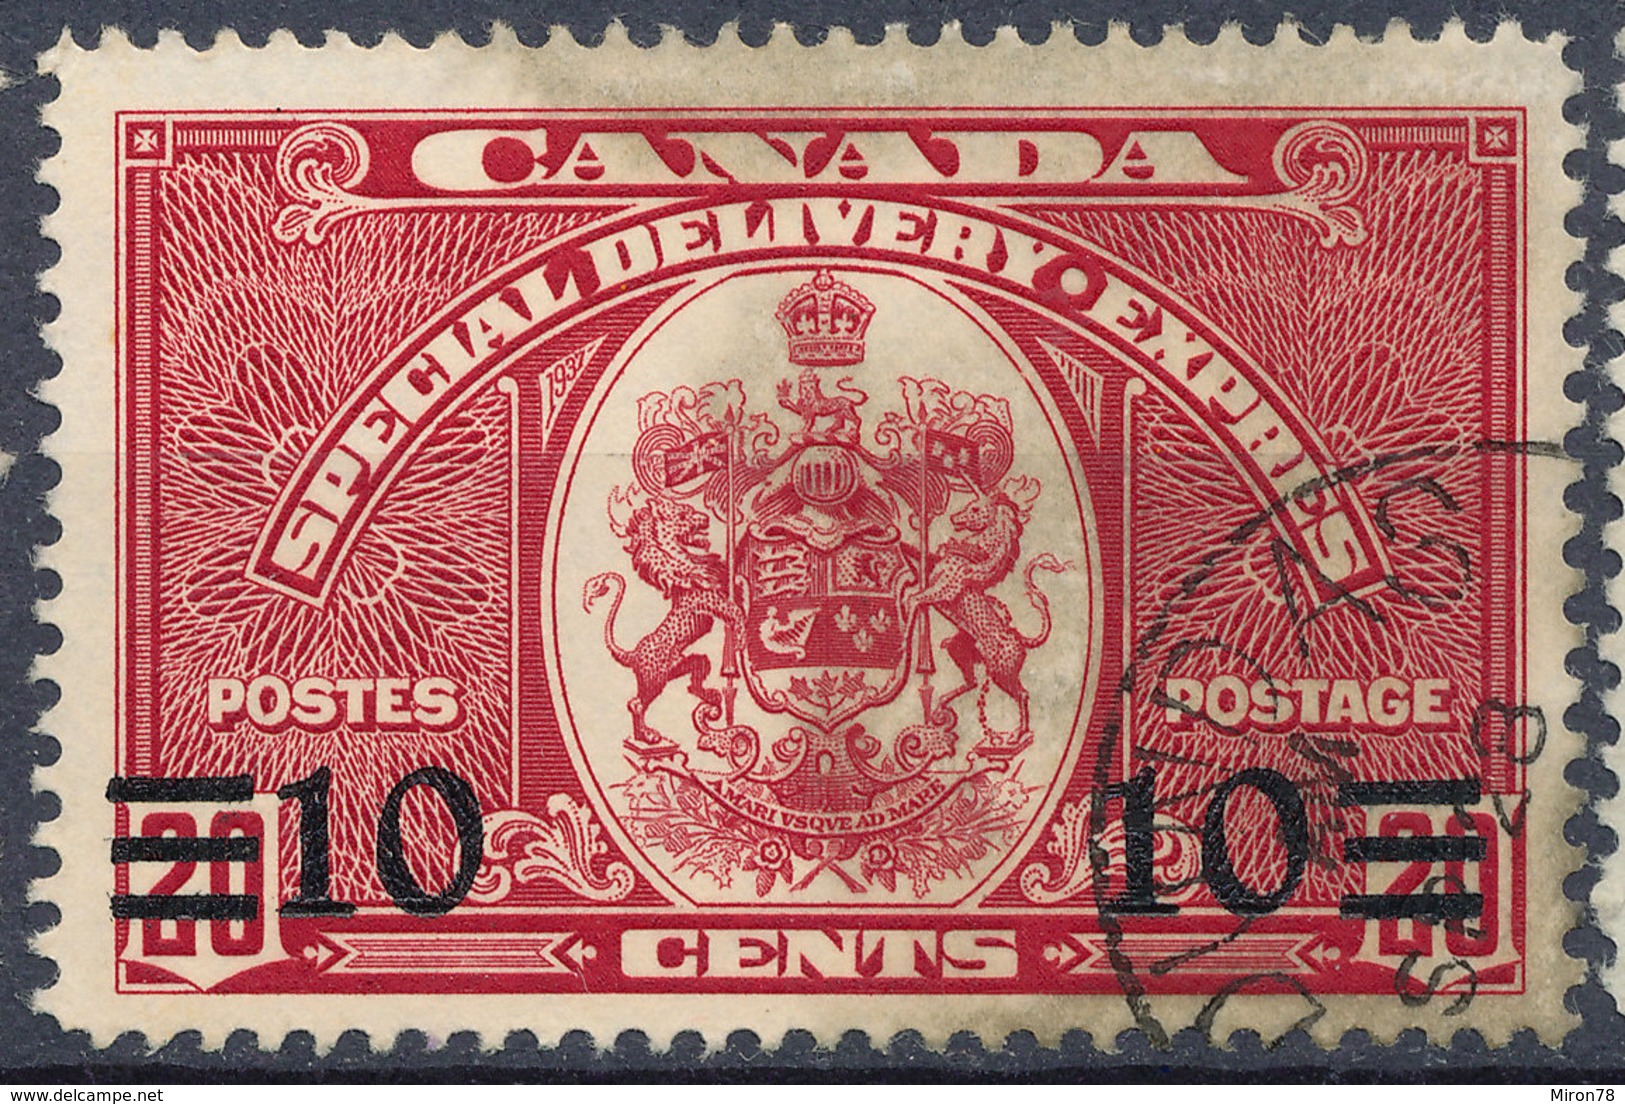 Stamp Canada  1939  Used - Correo Urgente